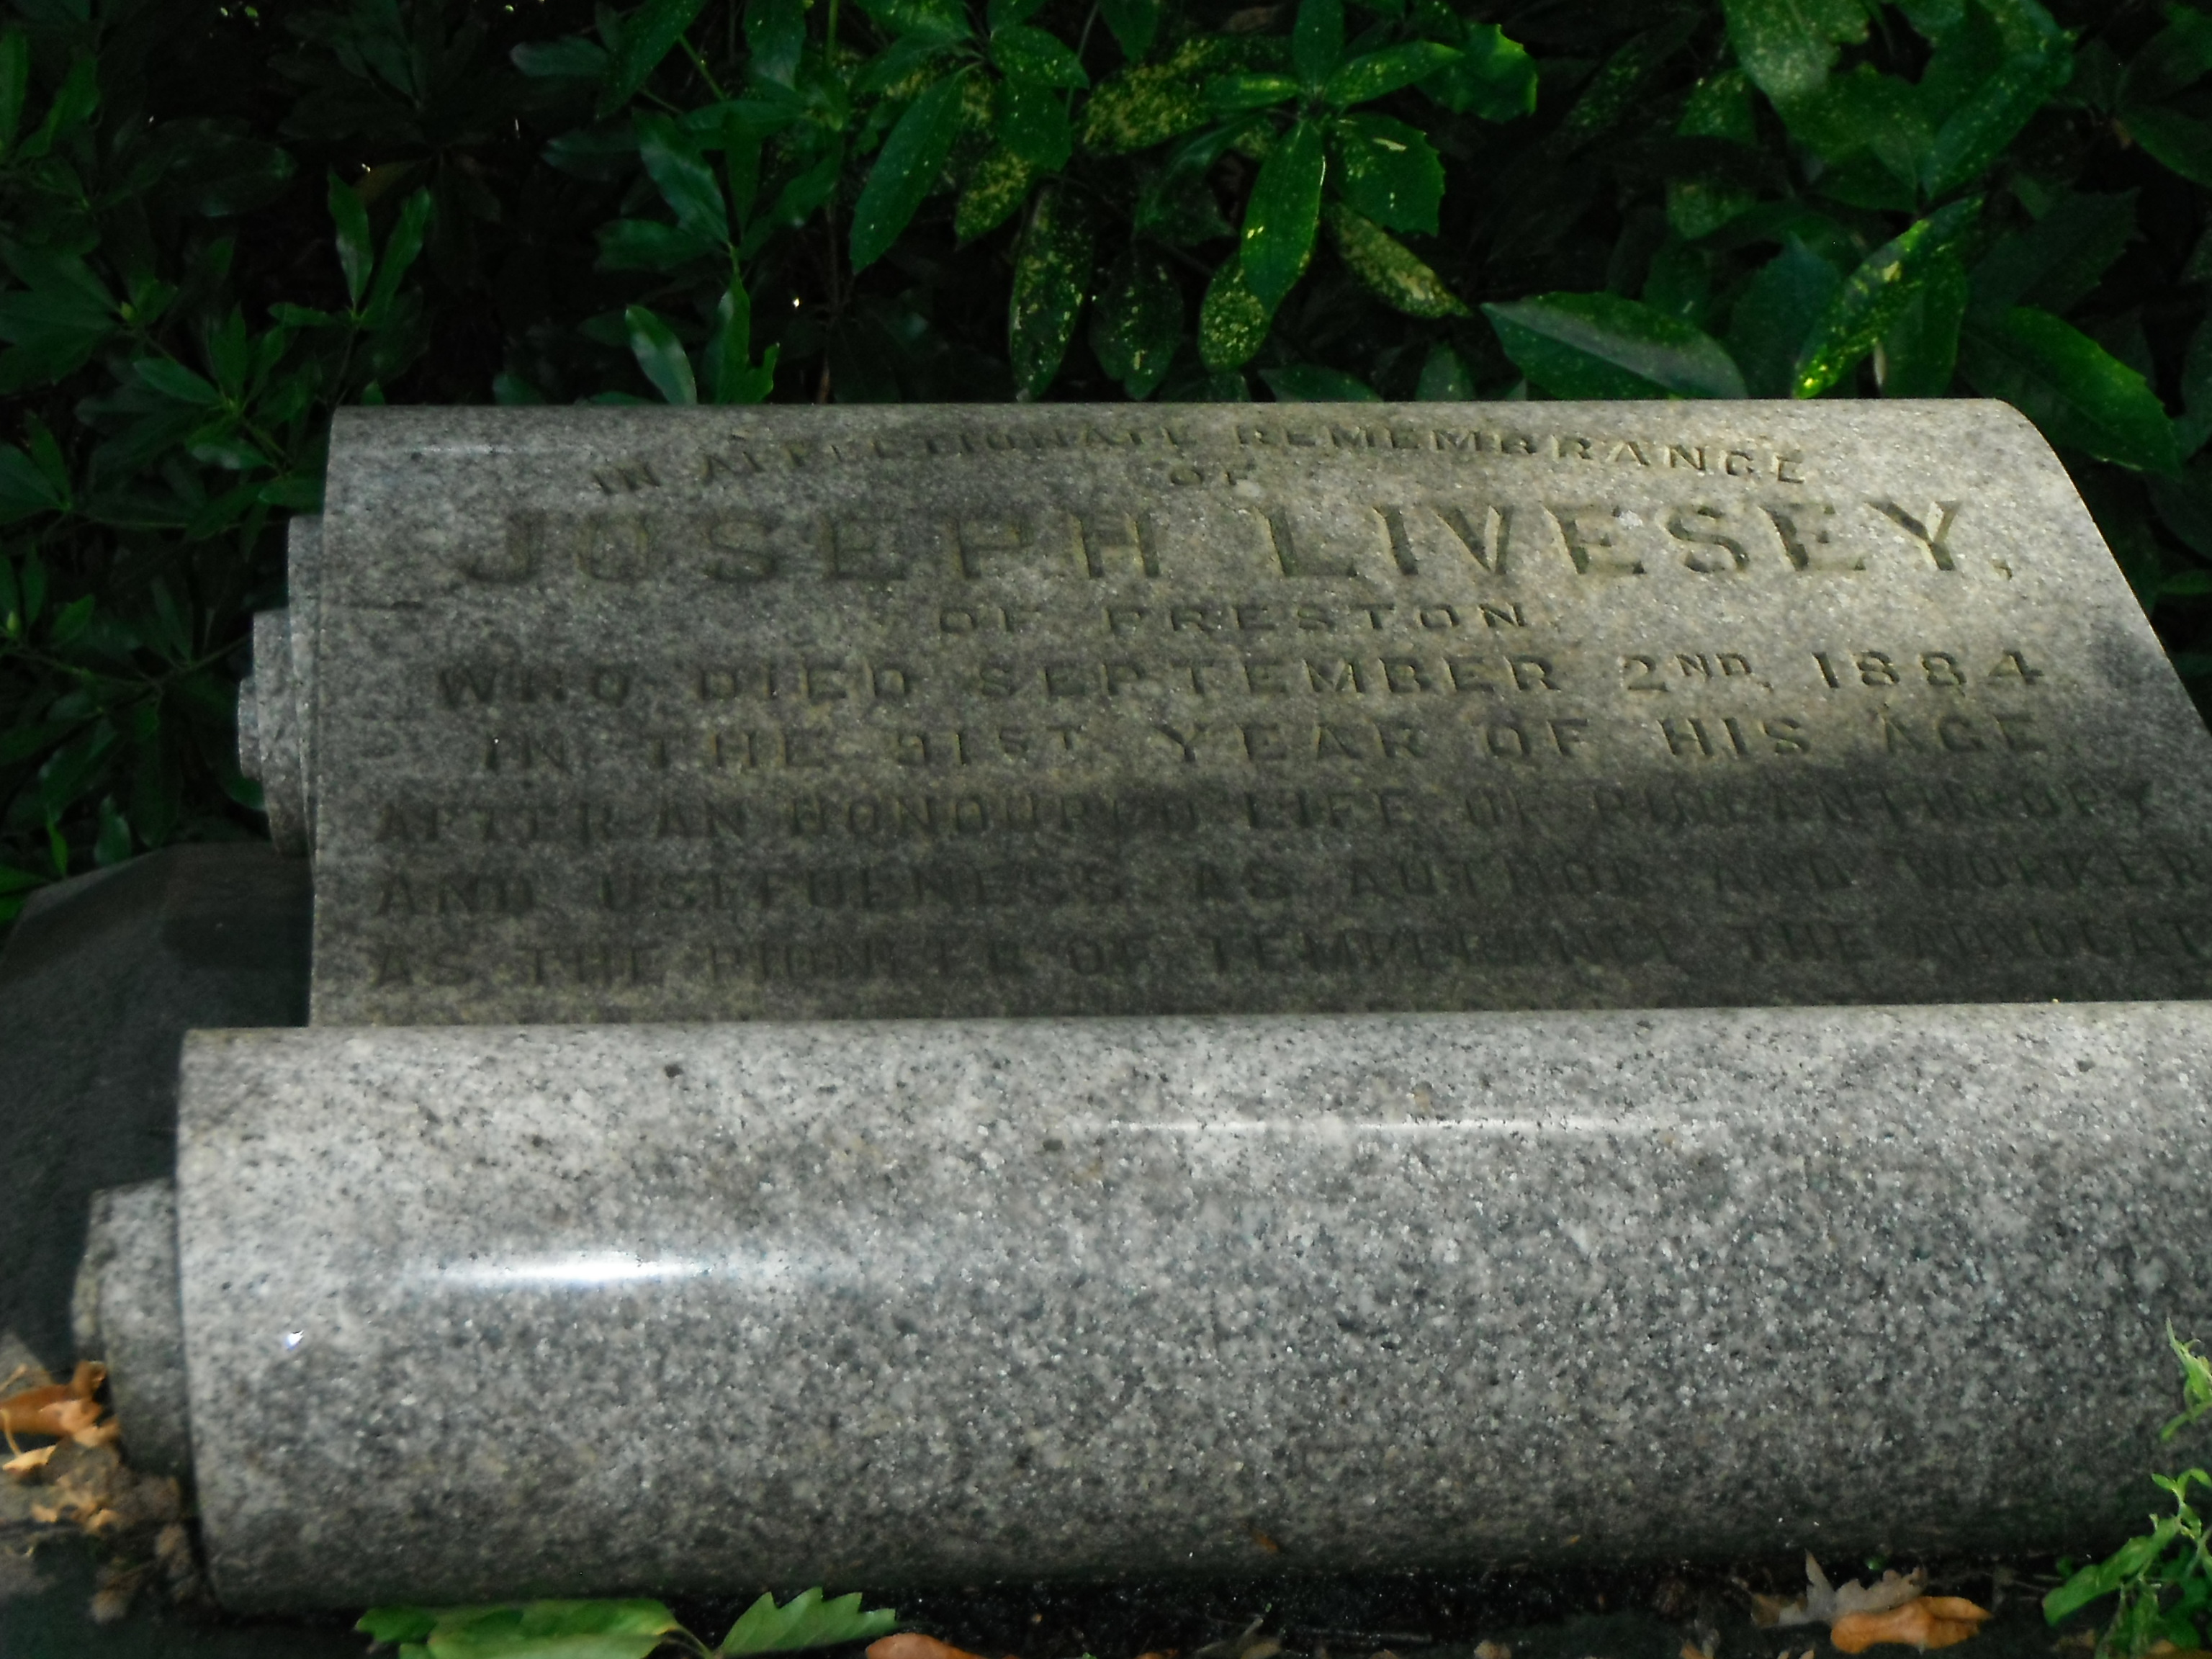 Photo taken by me -  grave in Preston cemetery 